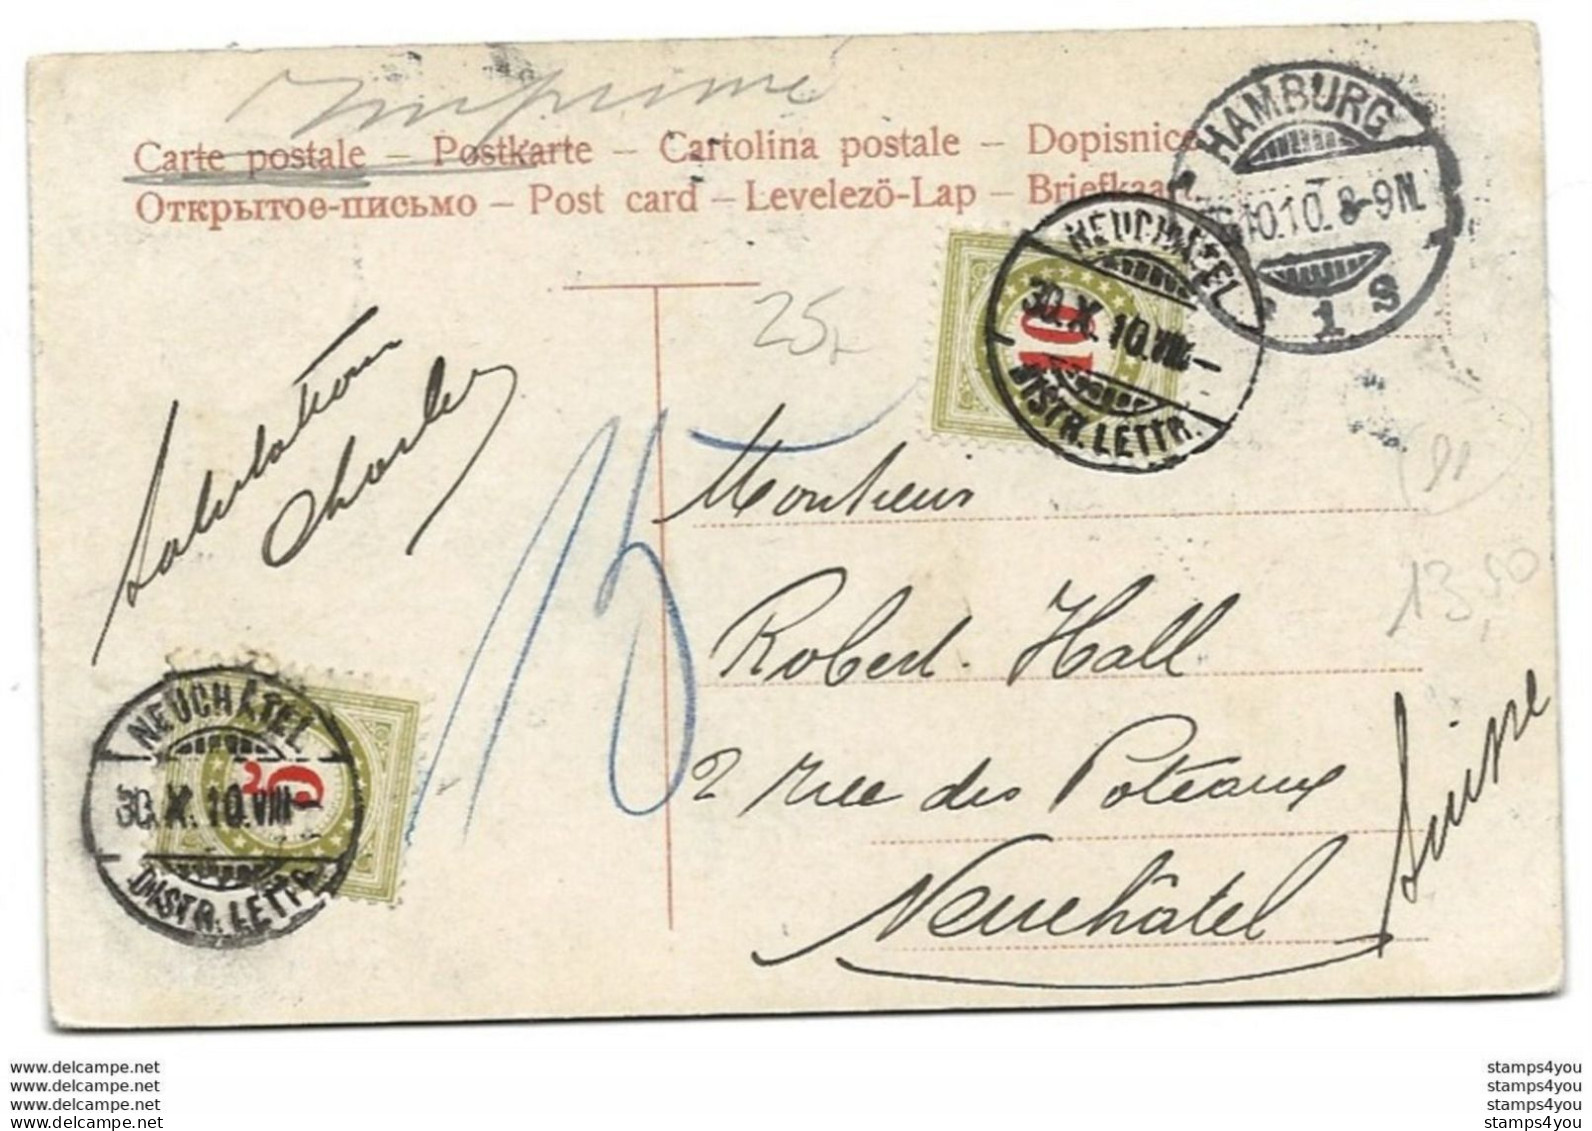 44 - 11 - Carte Envoyée De Hamburg En Suisse 1910 - 2 Timbres Suisses Taxe - Franchigia